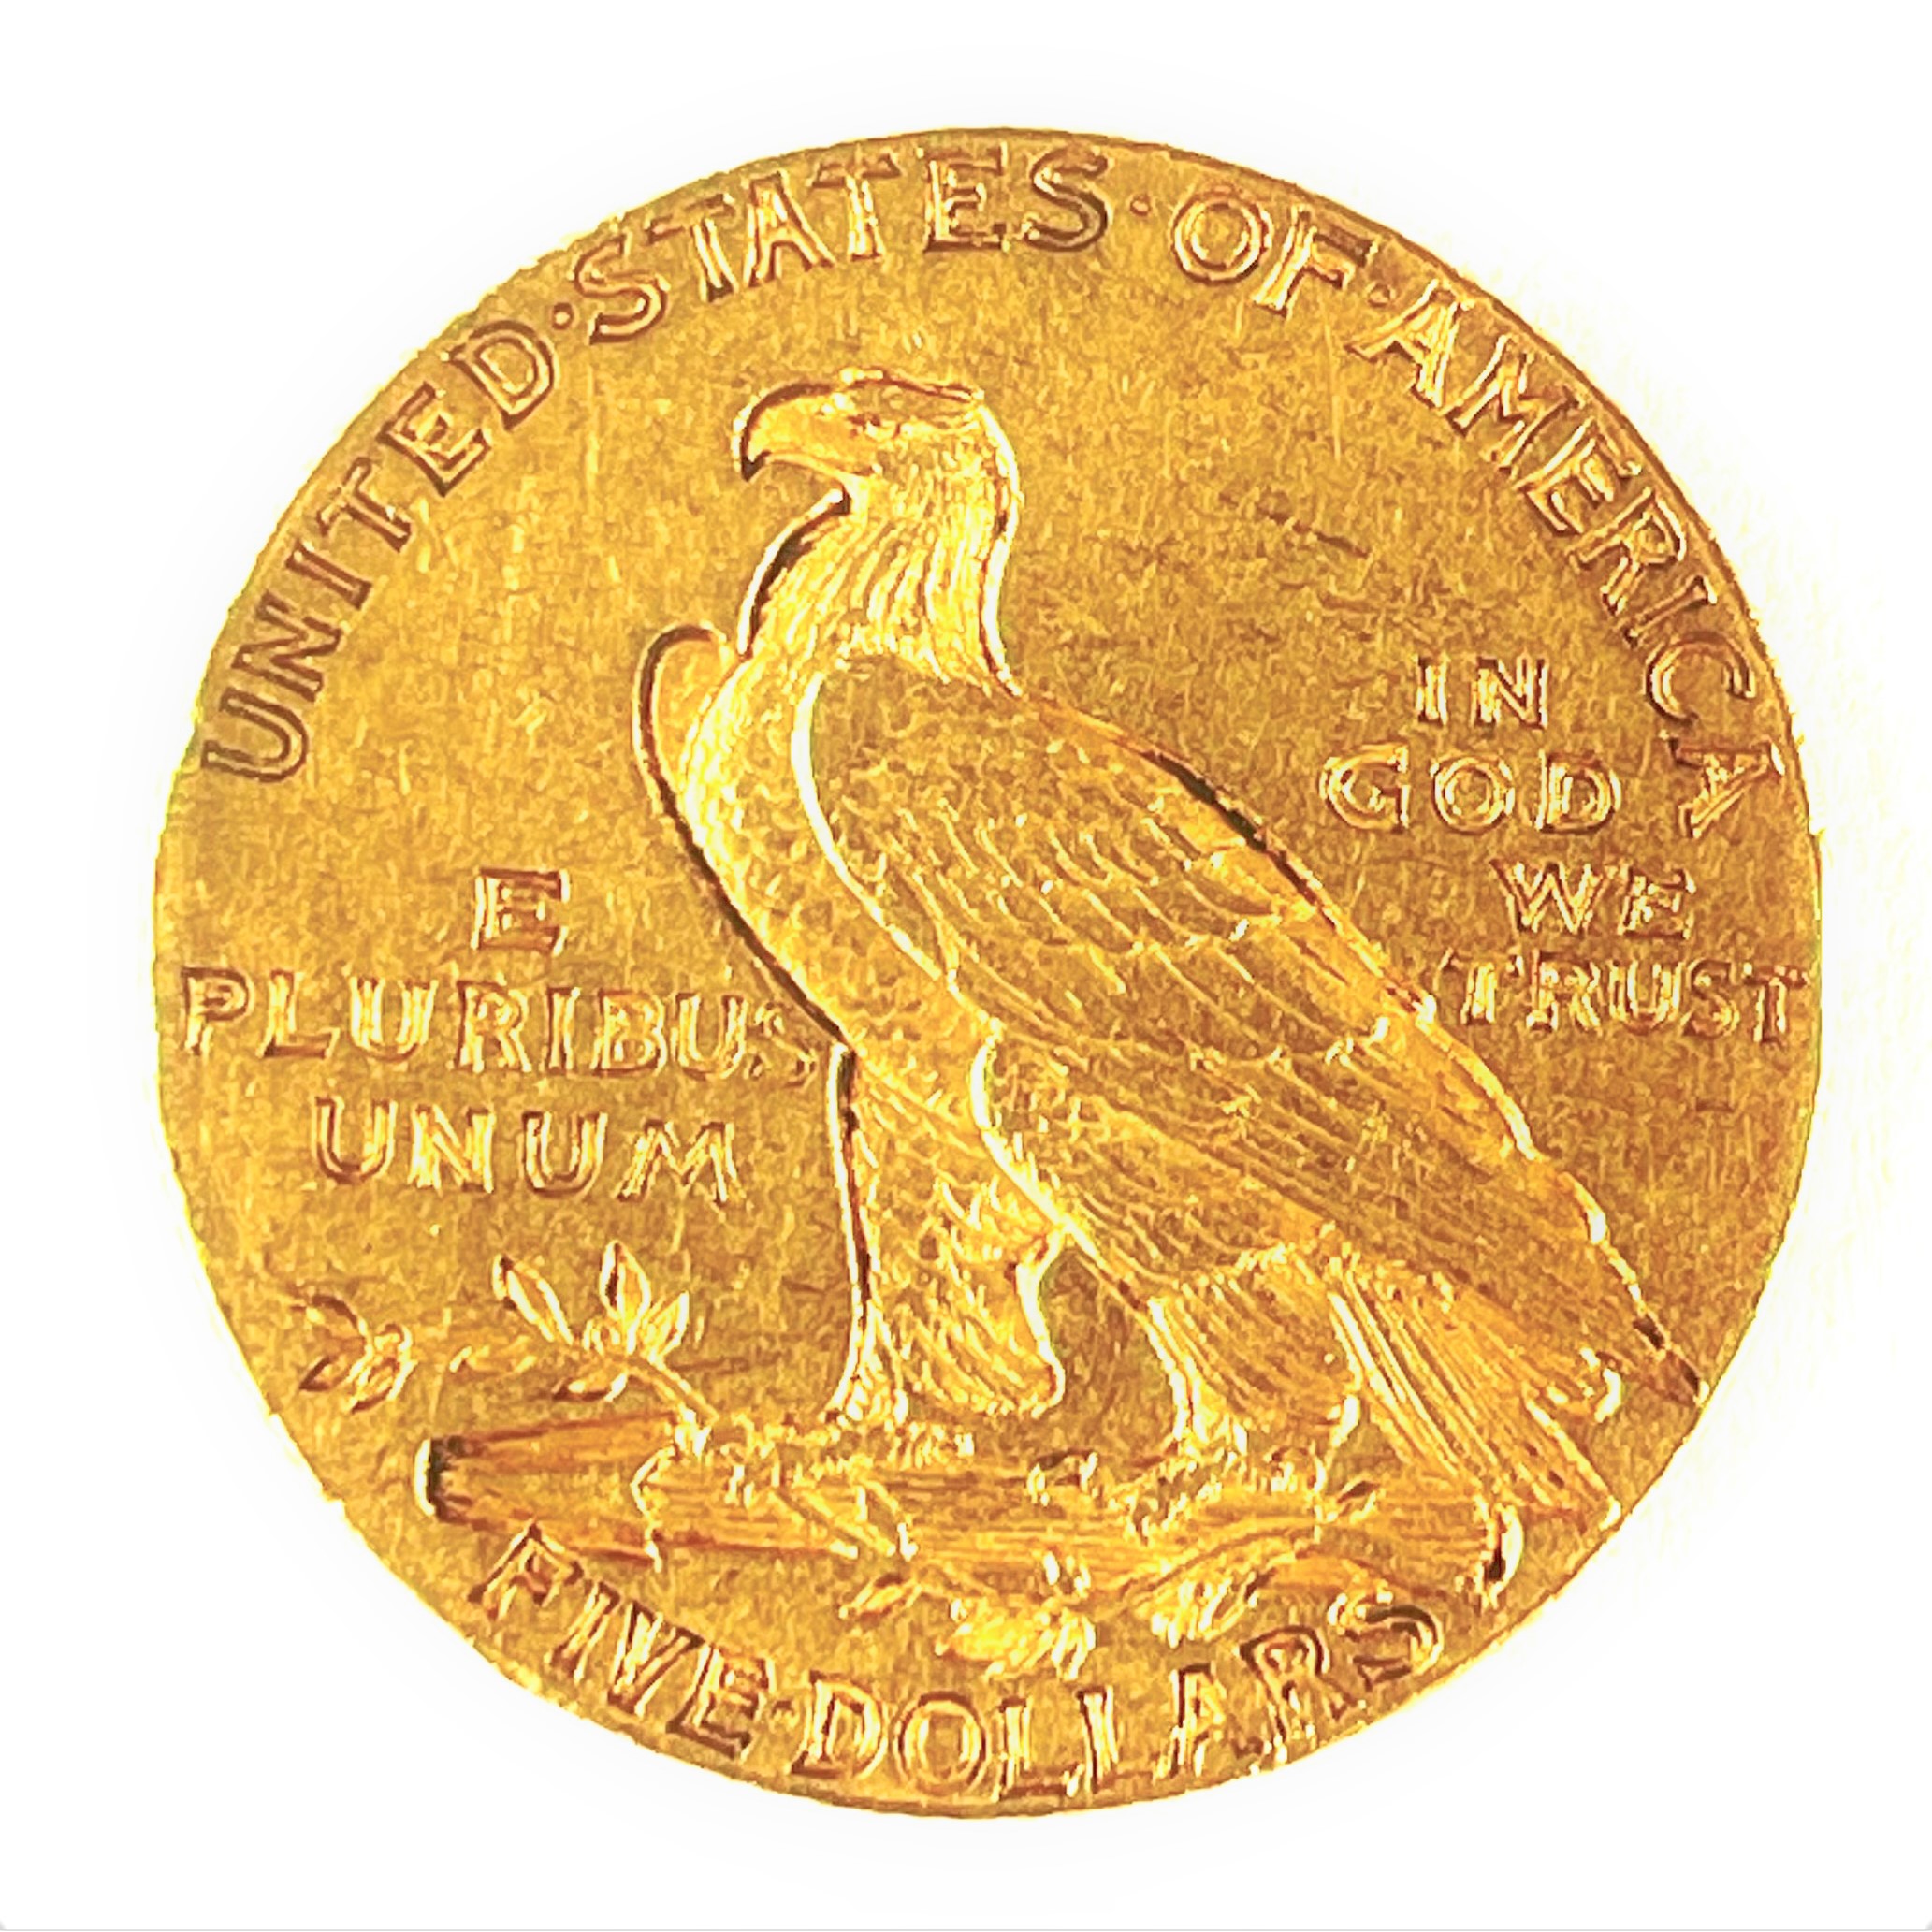 25. Zlatá mince 5 dolarů, 1908, USA